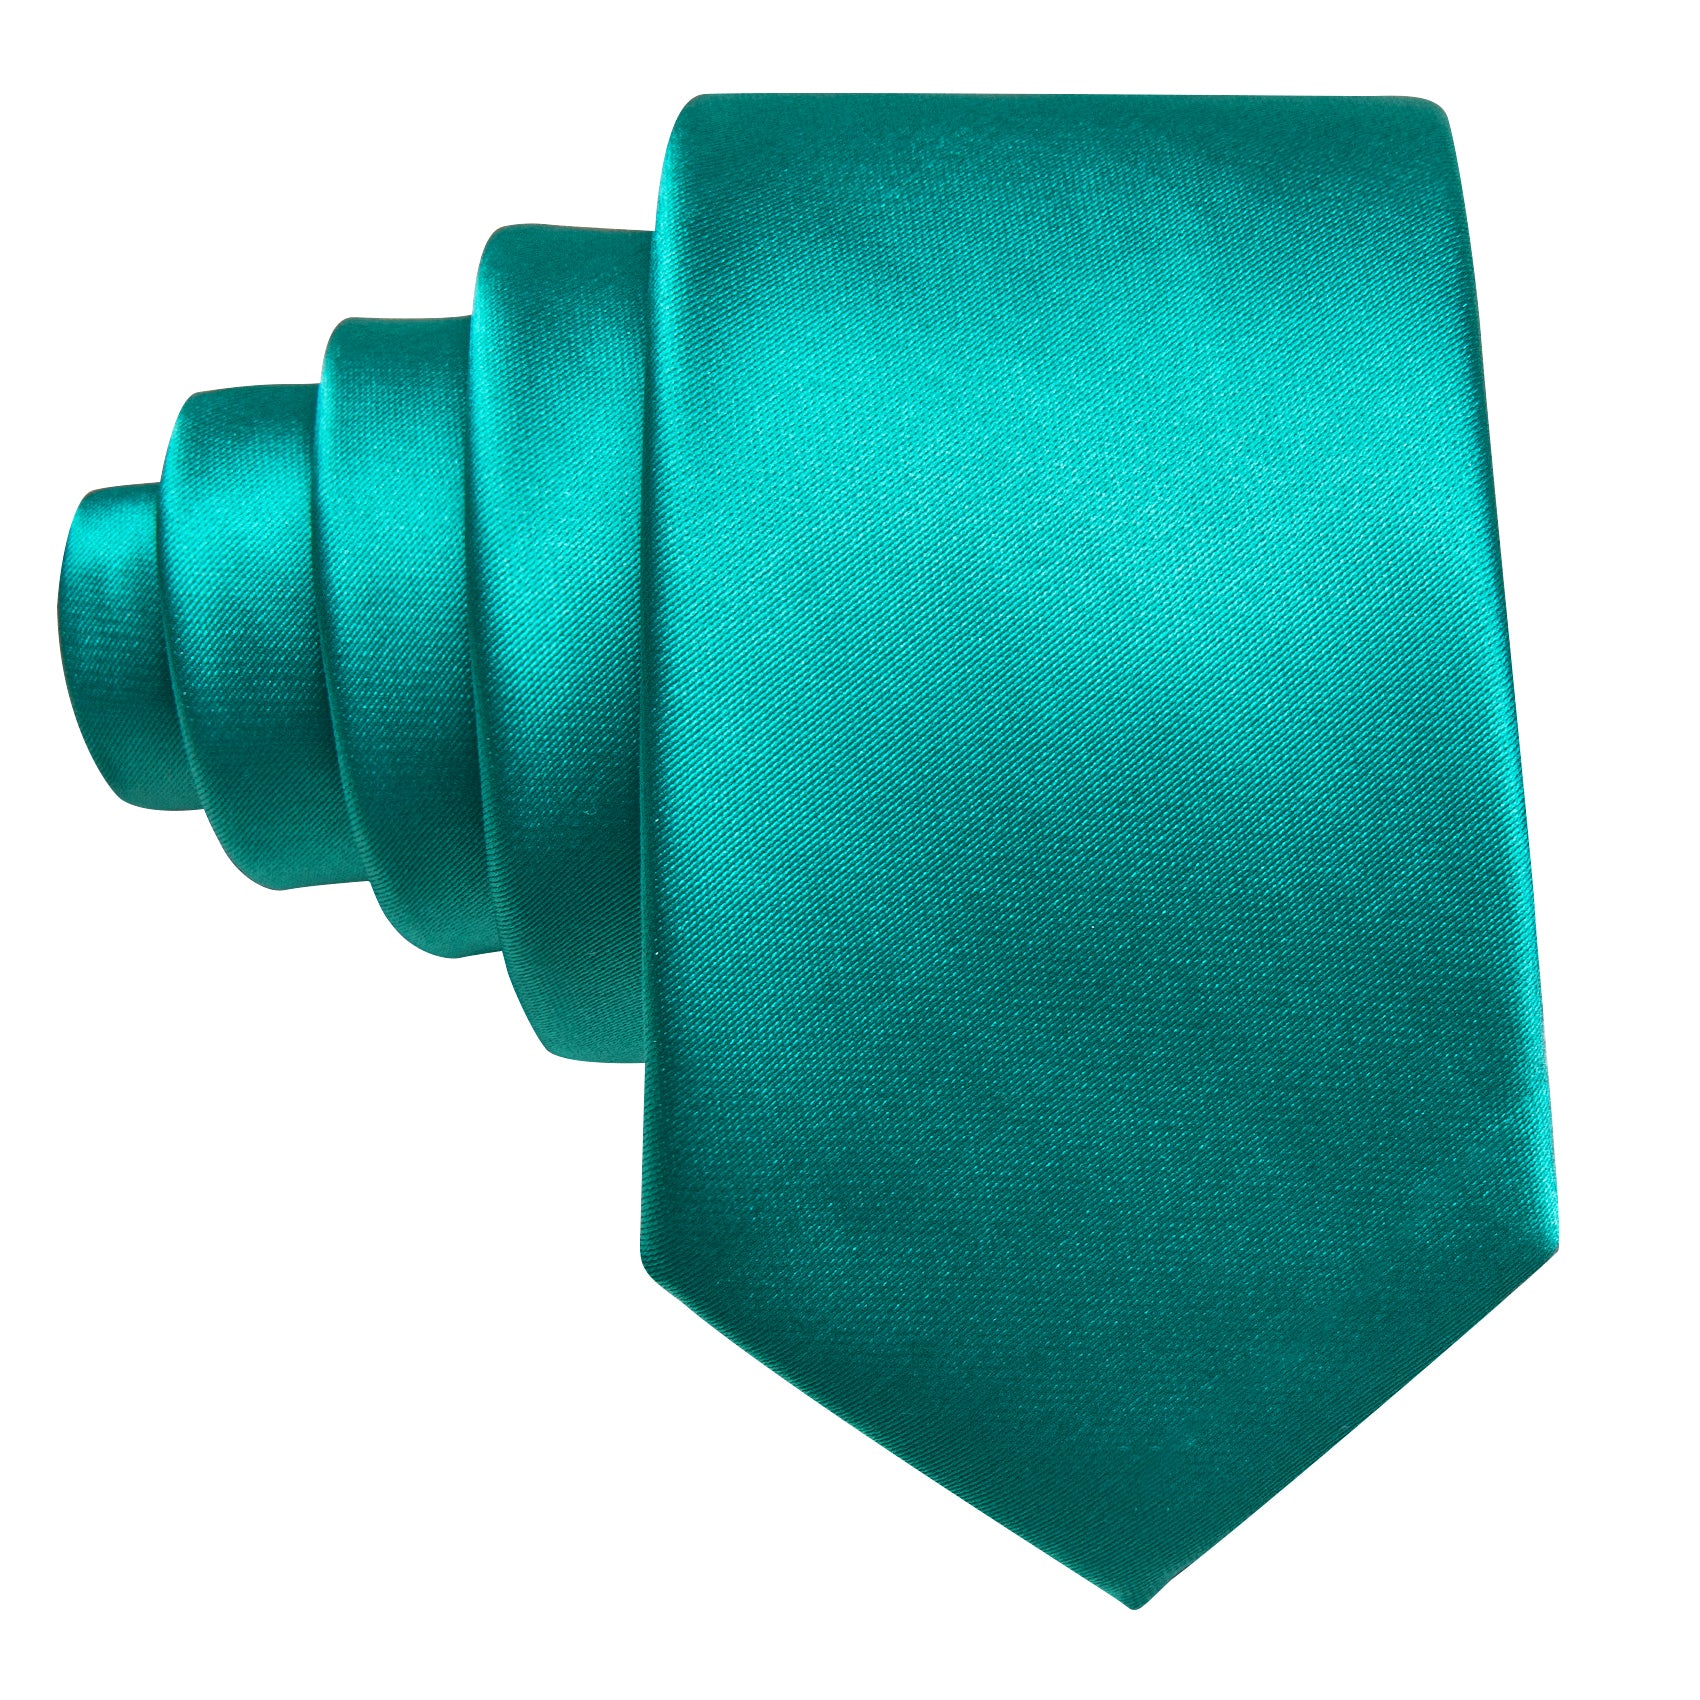 Aqua Solid Tie Pocket Square Set For Kids